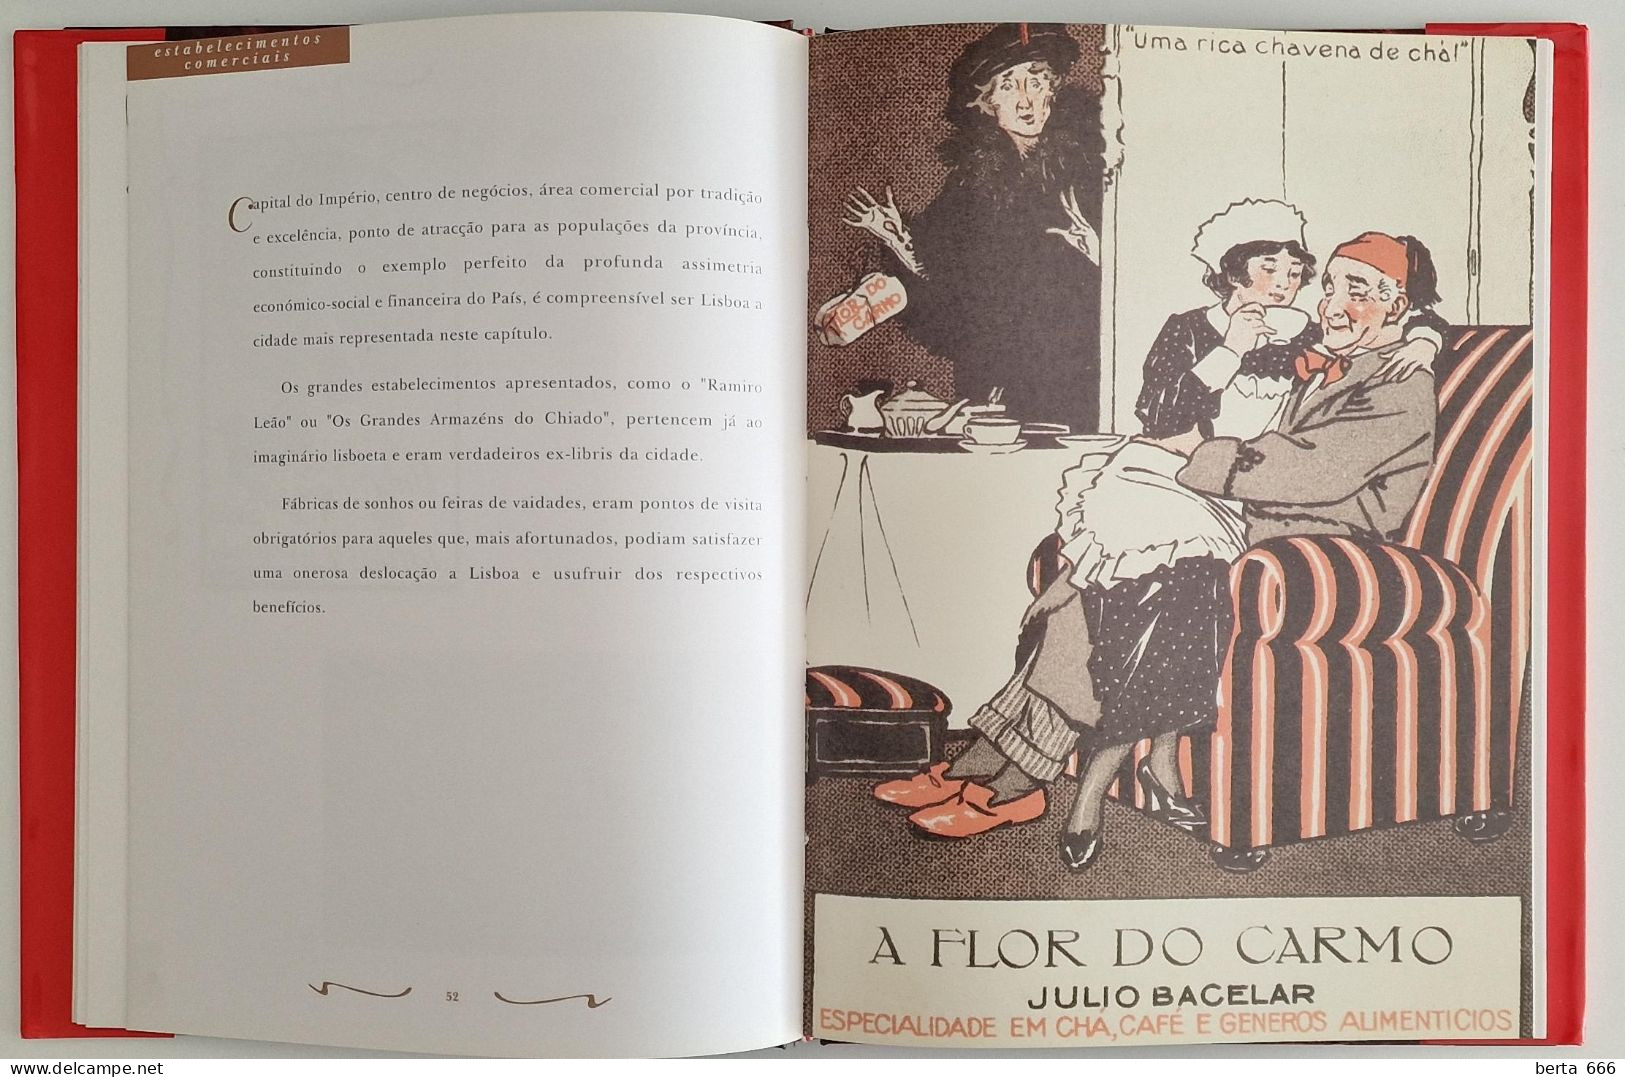 A Publicidade Em Portugal Através Do Bilhete Postal Ilustrado * Livro Capa Dura - Cultural